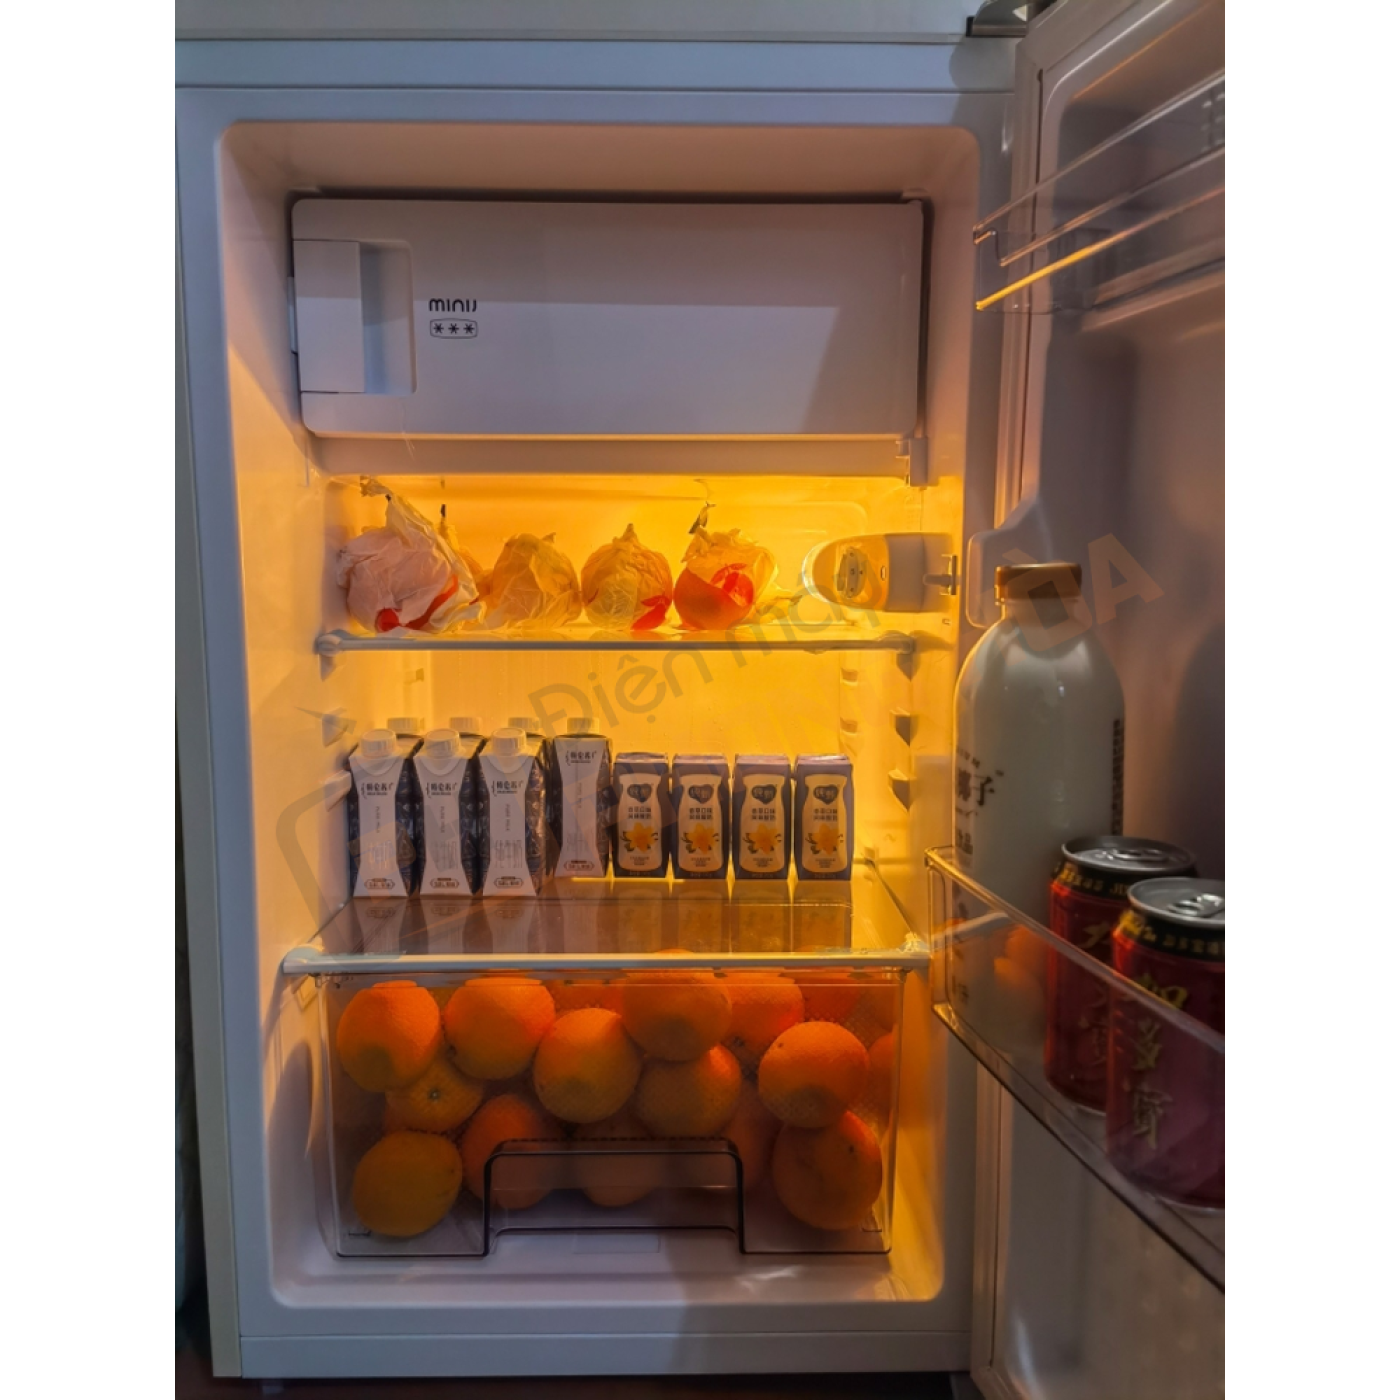 [Order] - Tủ Lạnh Xiaomi Mijia MiniJ Retro 121L BC-M121RWT